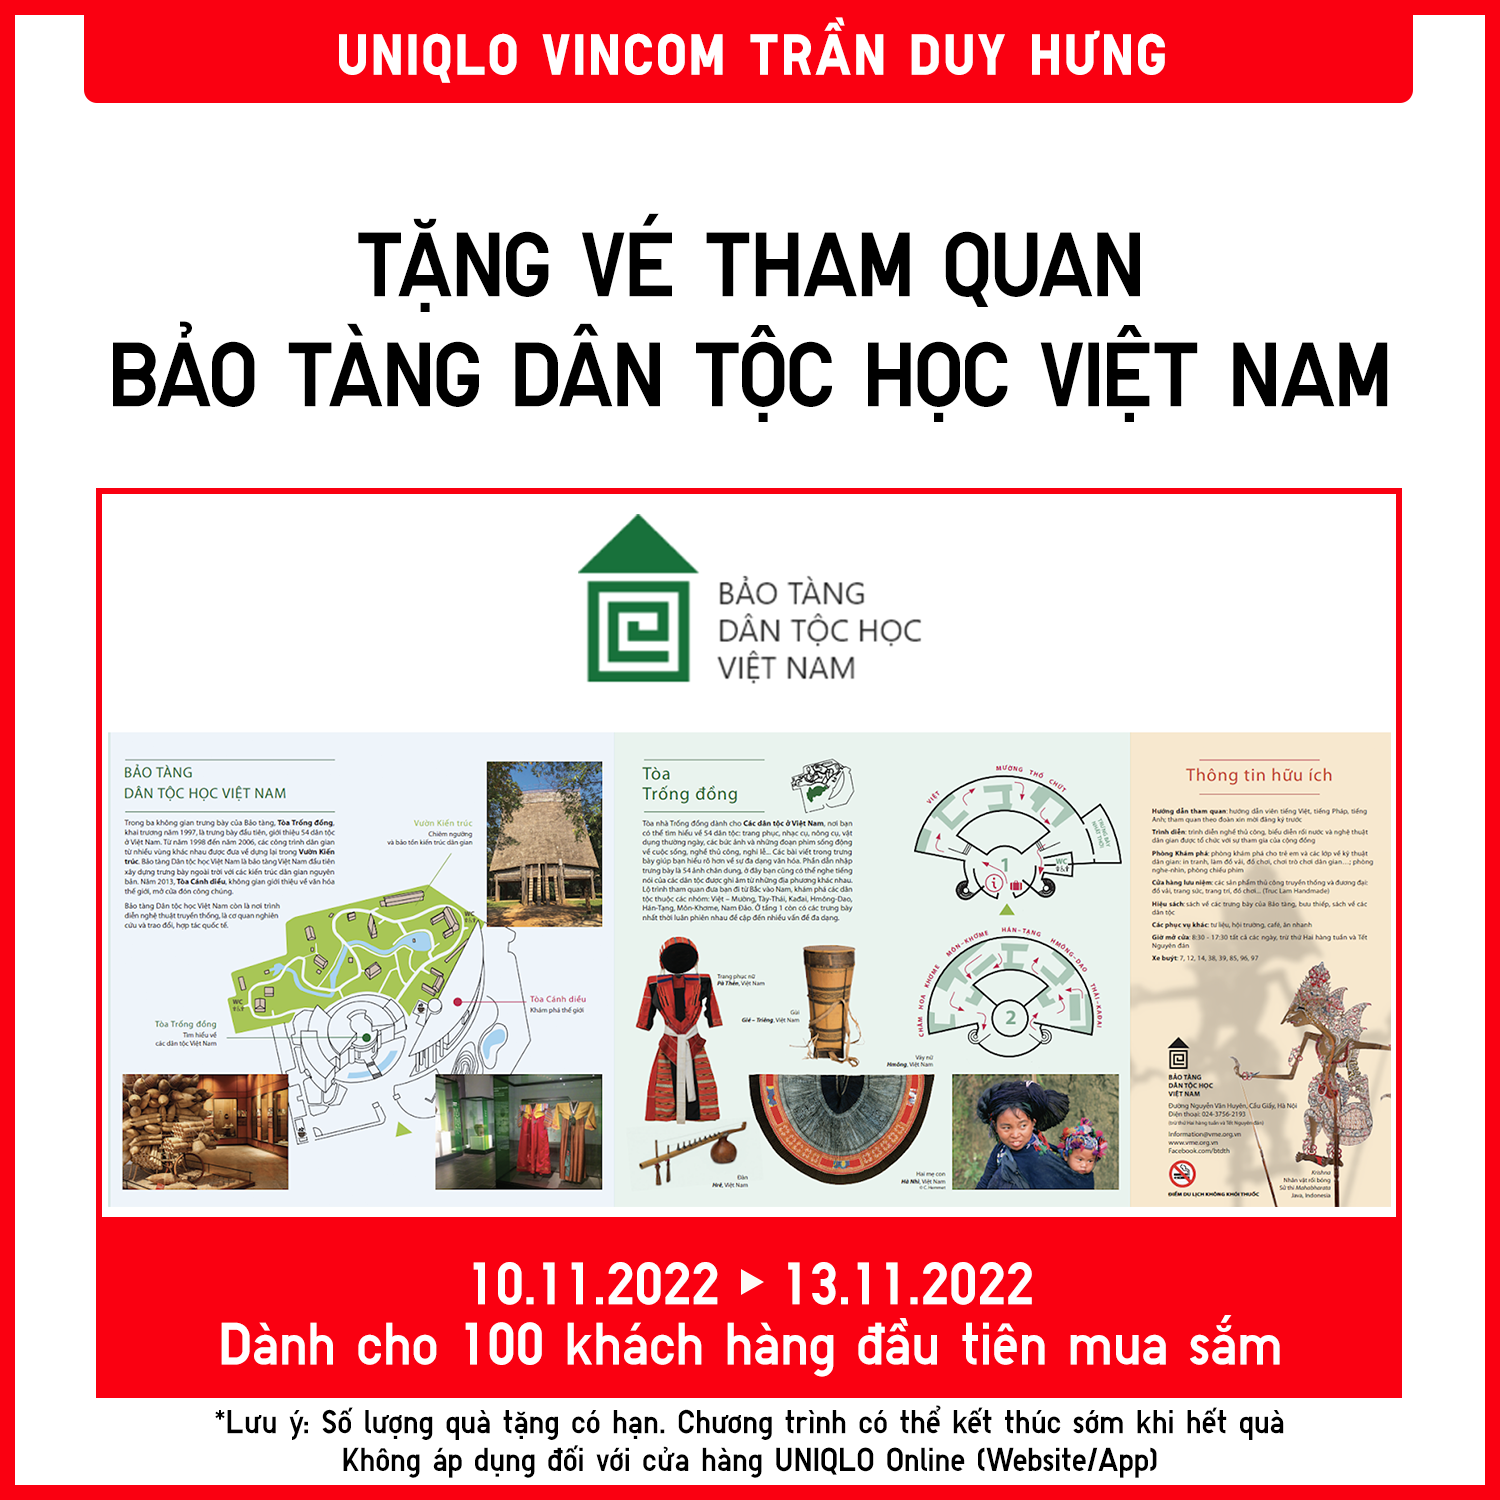 Uniqlo bán hàng trực tuyến tại Việt Nam từ 511 với nhiều tiện ích  Mặc đẹp